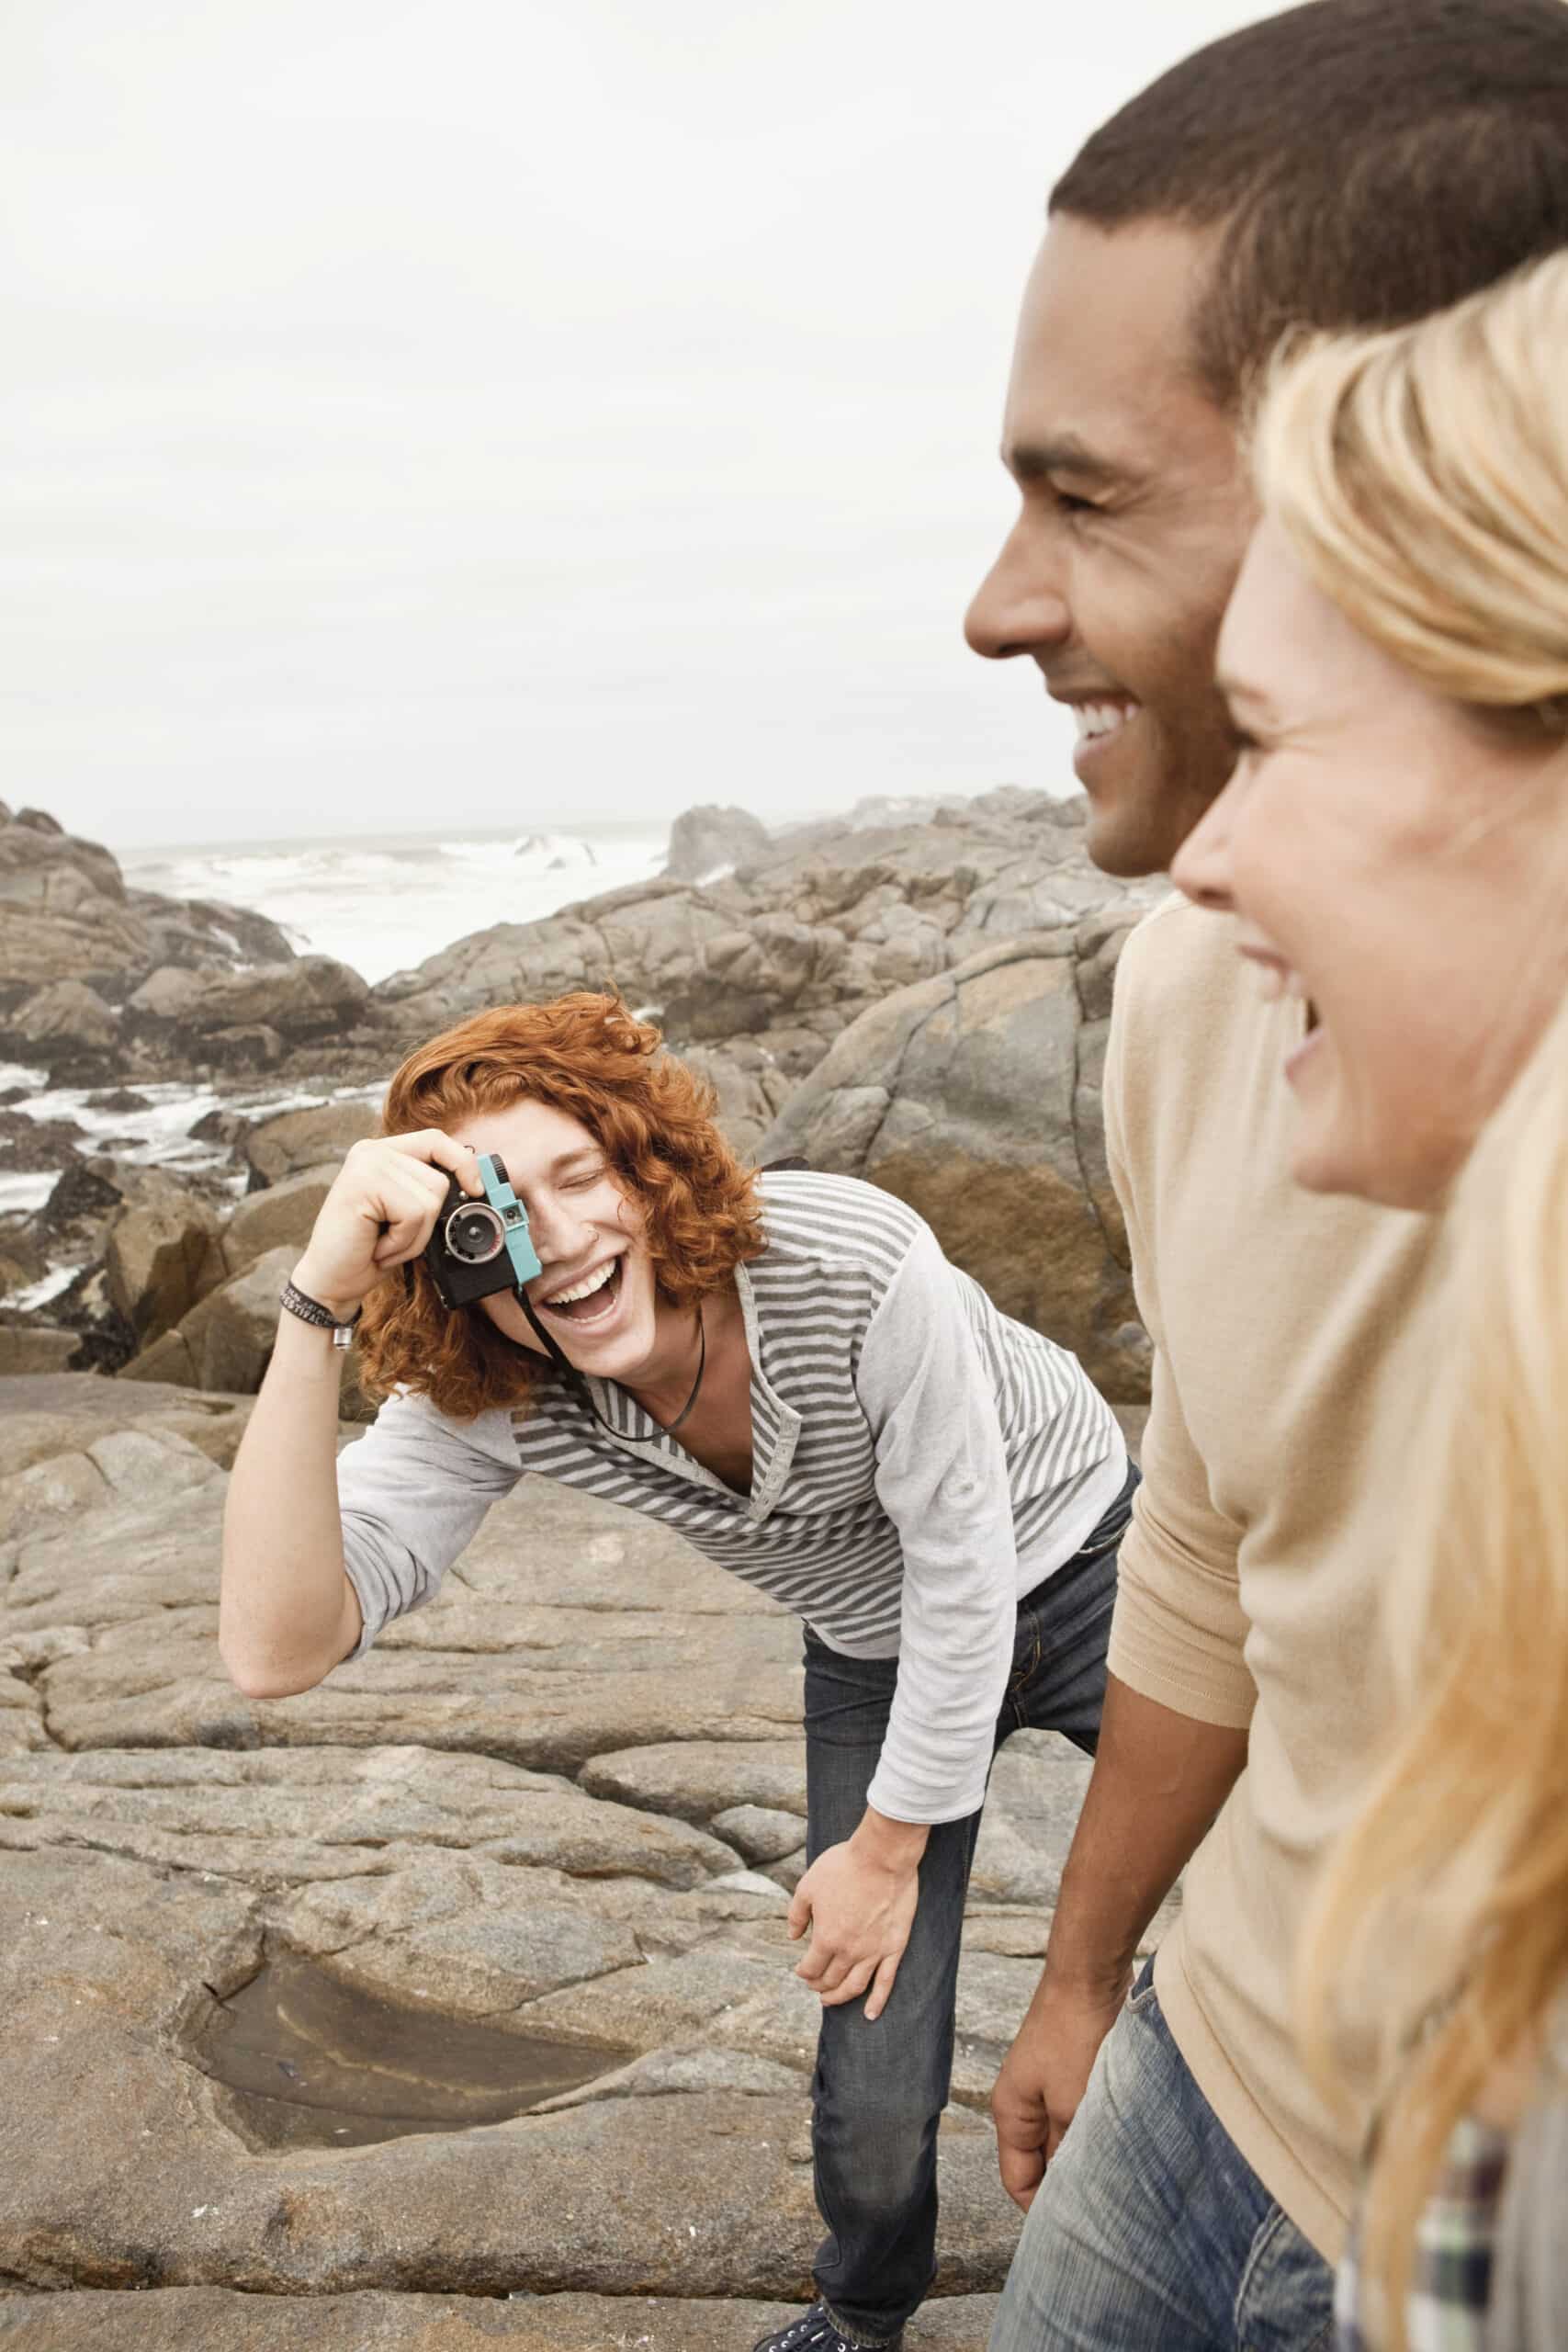 Eine fröhliche Frau mit lockigem rotem Haar macht mit einer Kamera ein Foto und lacht mit einem Mann und einer anderen Frau in einer felsigen Küstenlandschaft. © Fotografie Tomas Rodriguez